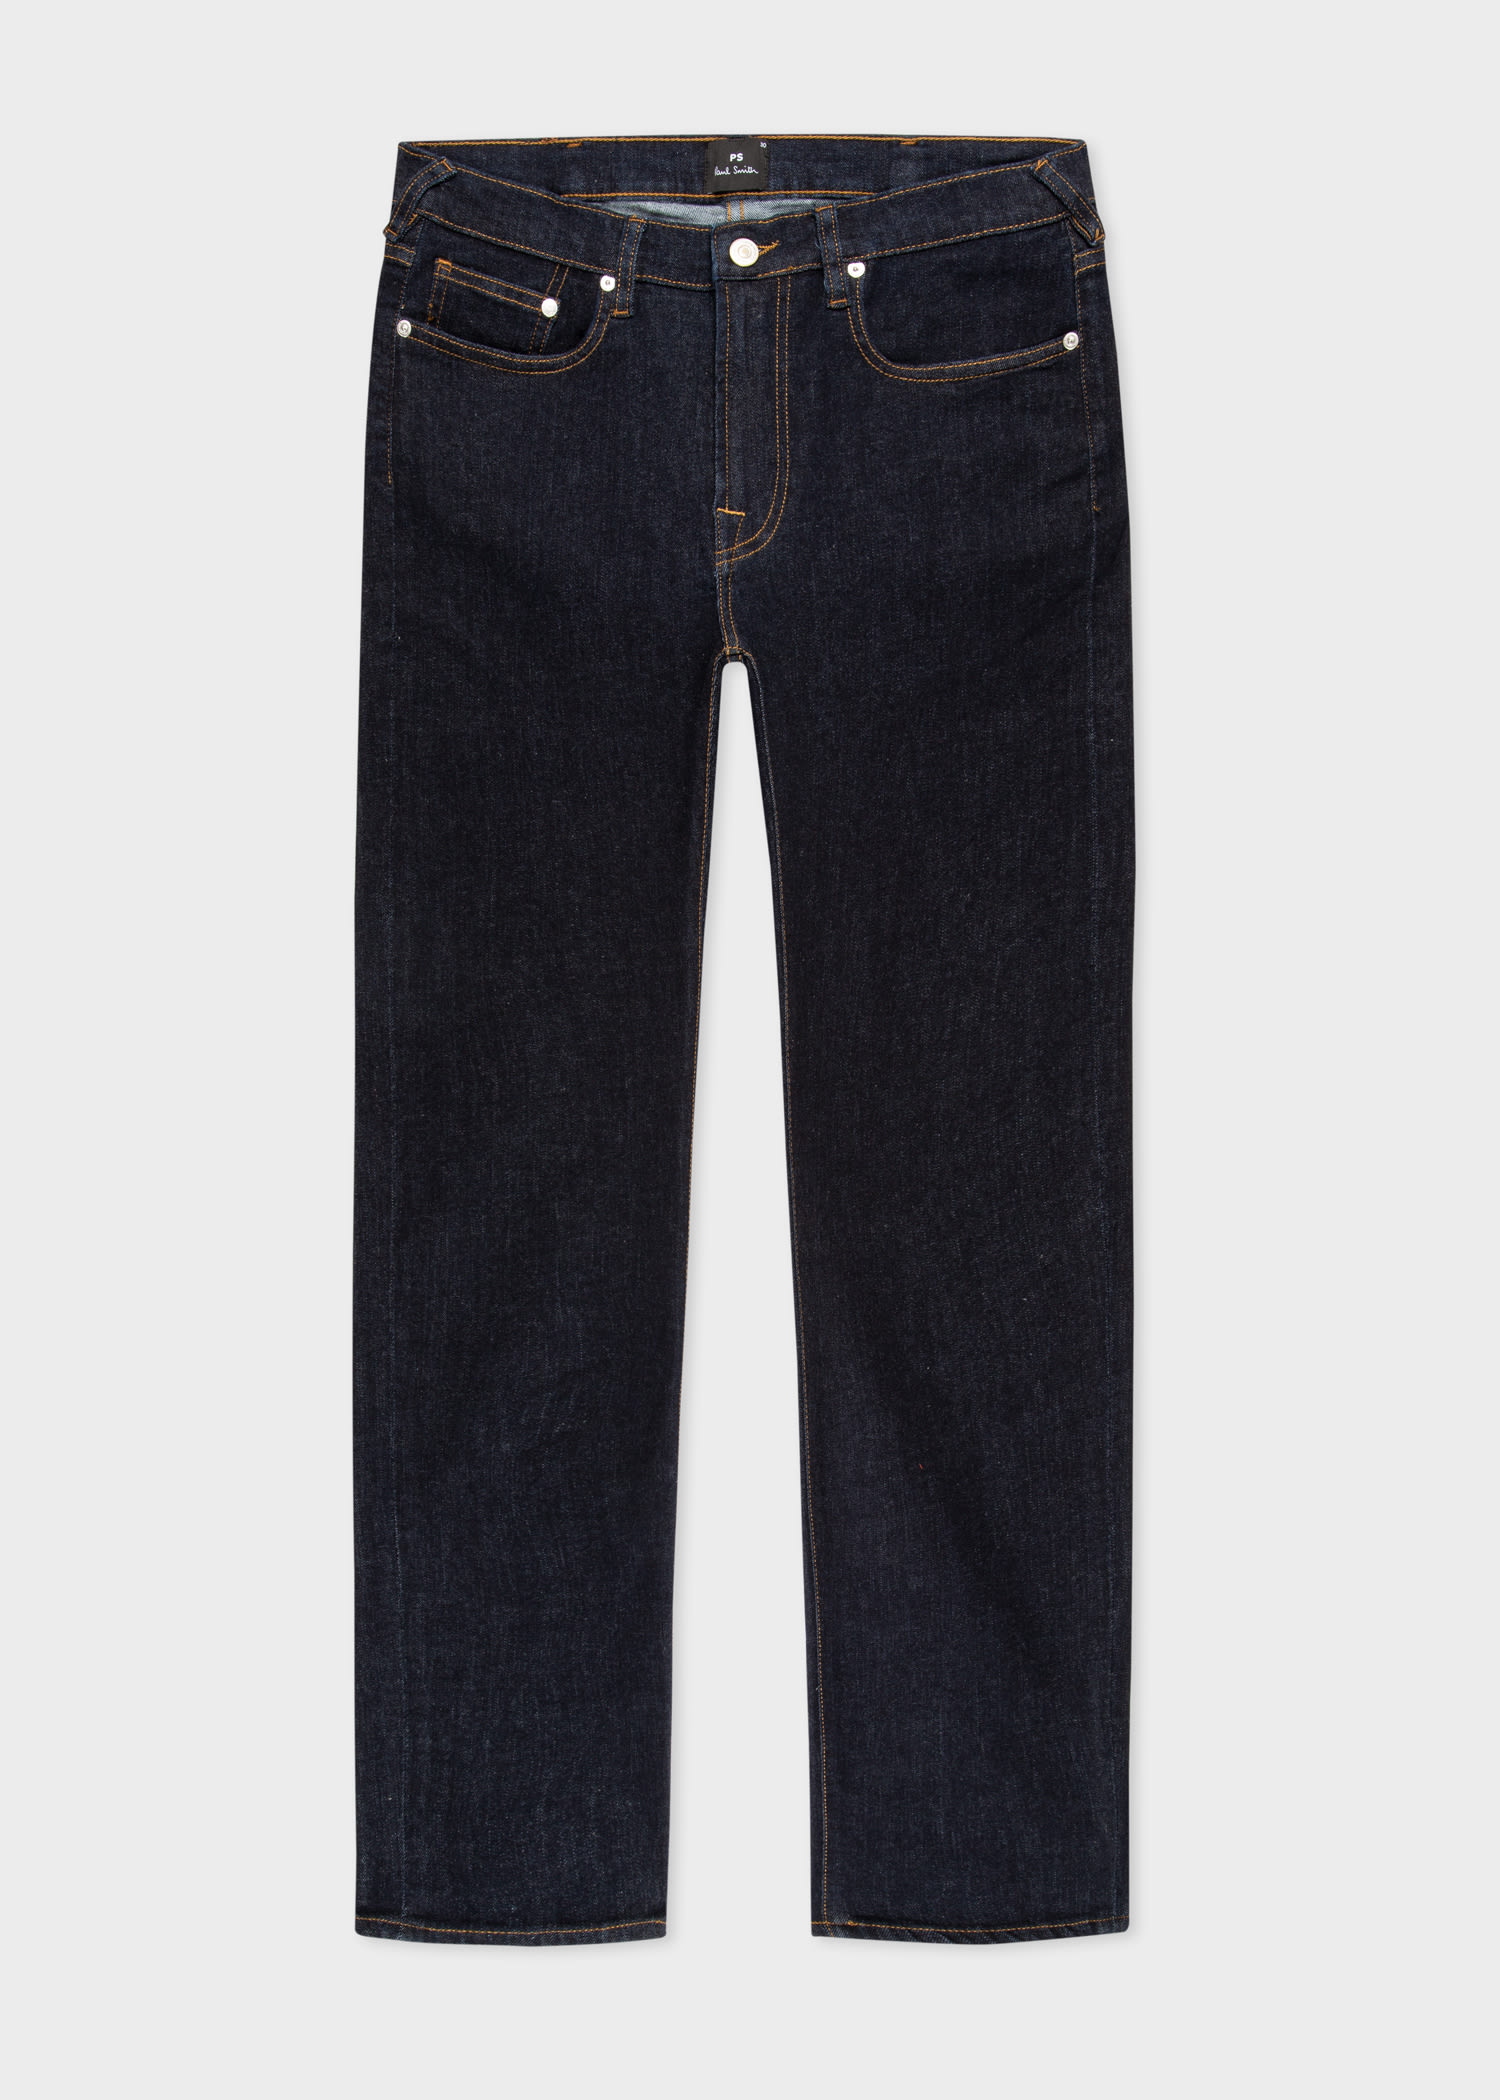 Men's Designer Jeans | Stretch, Skinny & Slim Fit - Paul Smith